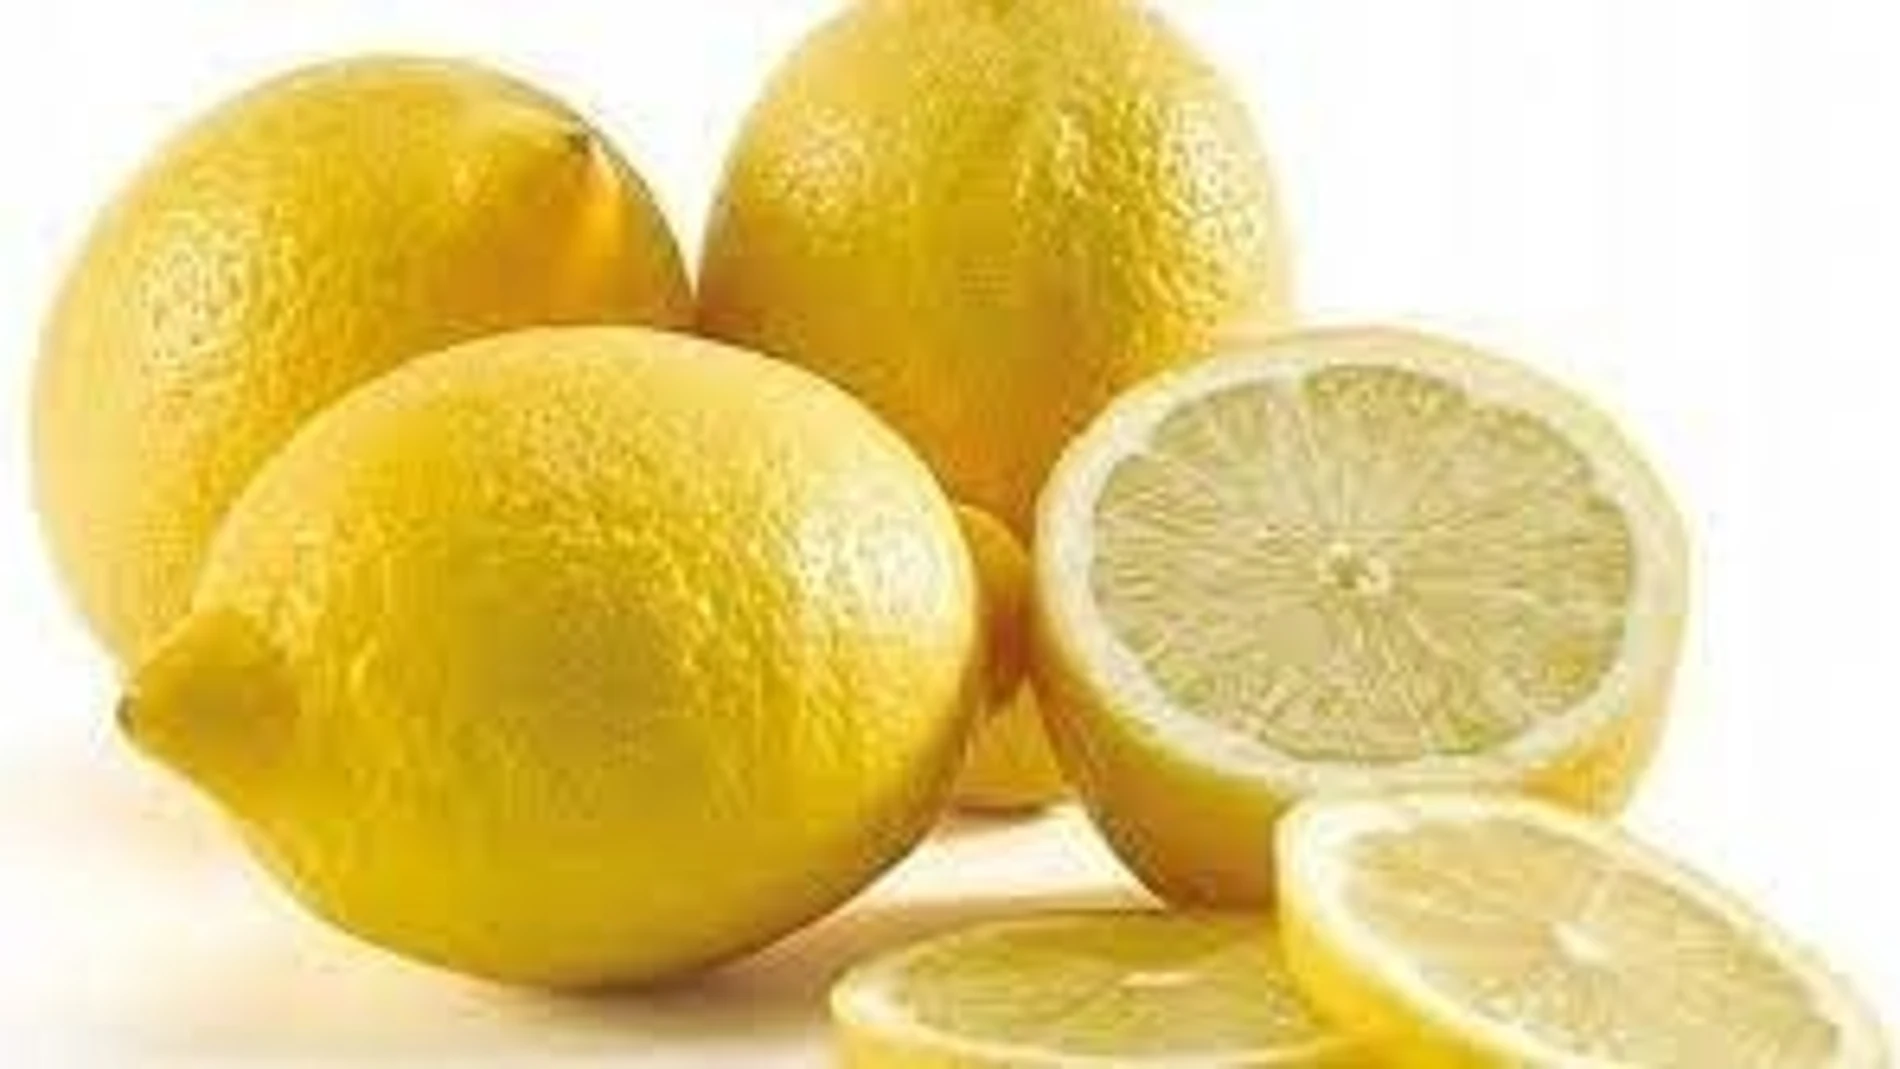 Si quieres que no quede ni un resto de zumo sin exprimir, lo que puedes hacer es rodar el limón sobre la encimera haciendo un poquito de fuerza | Fuente: Europa Press